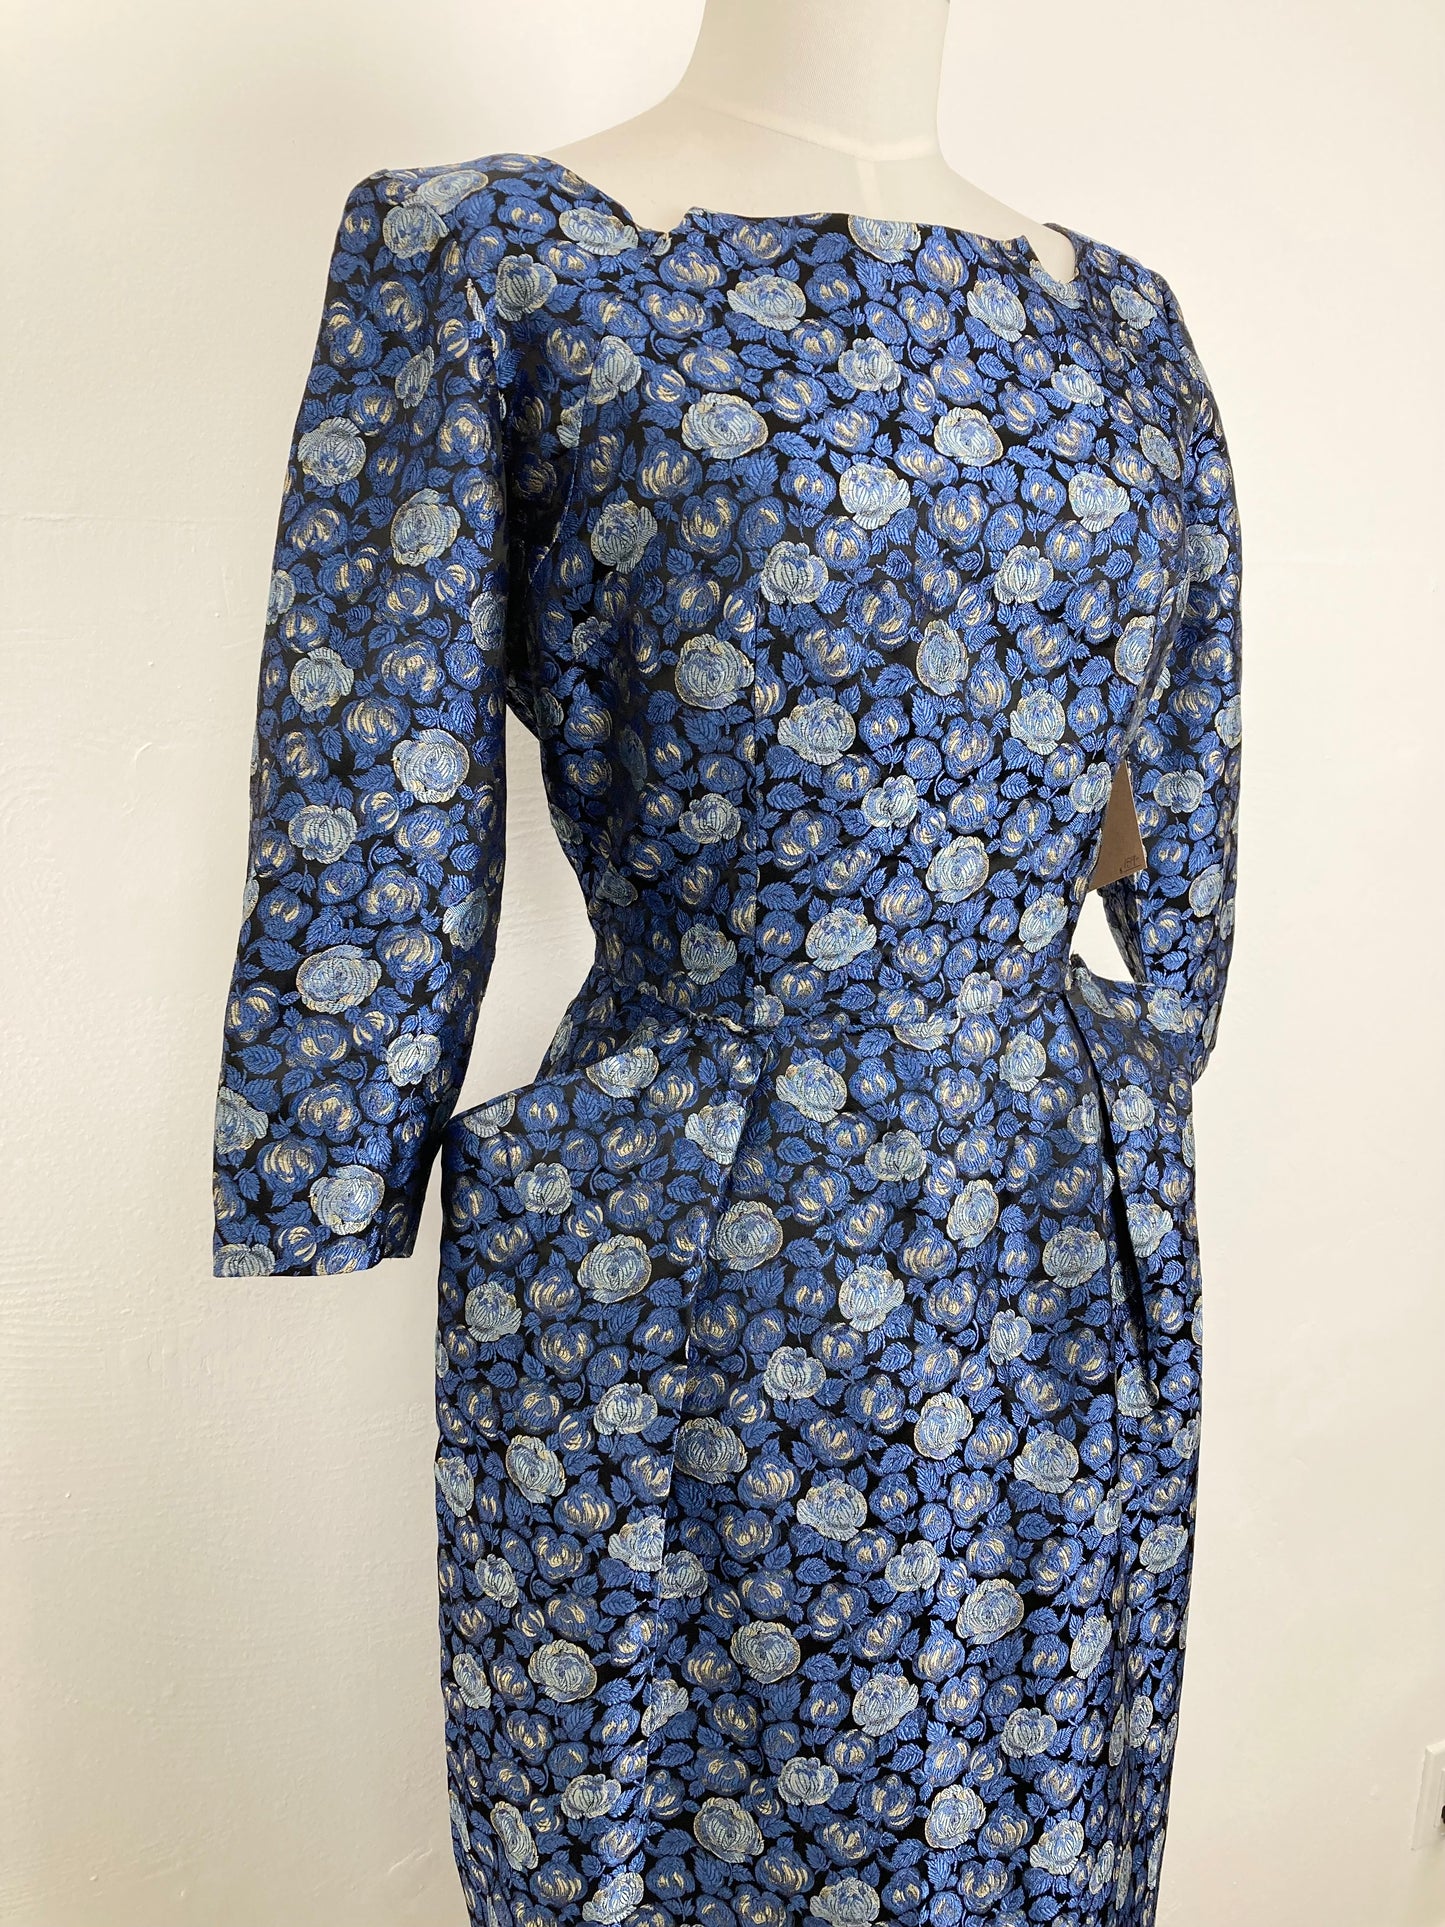 1950s Blue Brocade Dress, Size M/L